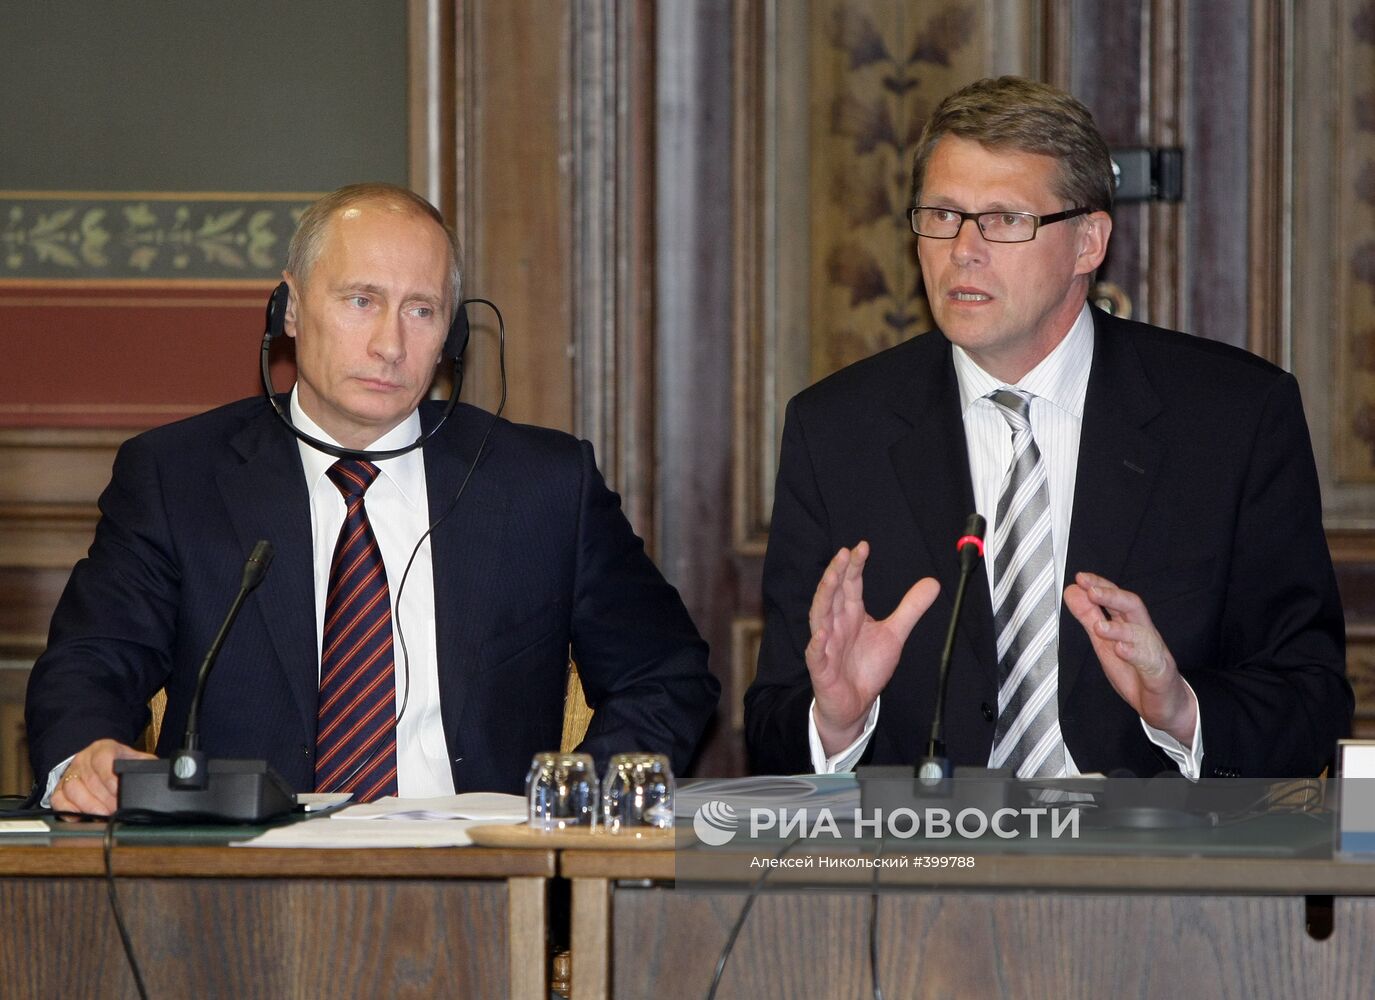 В. Путин и М. Ванханен. Встреча с представителями деловых кругов